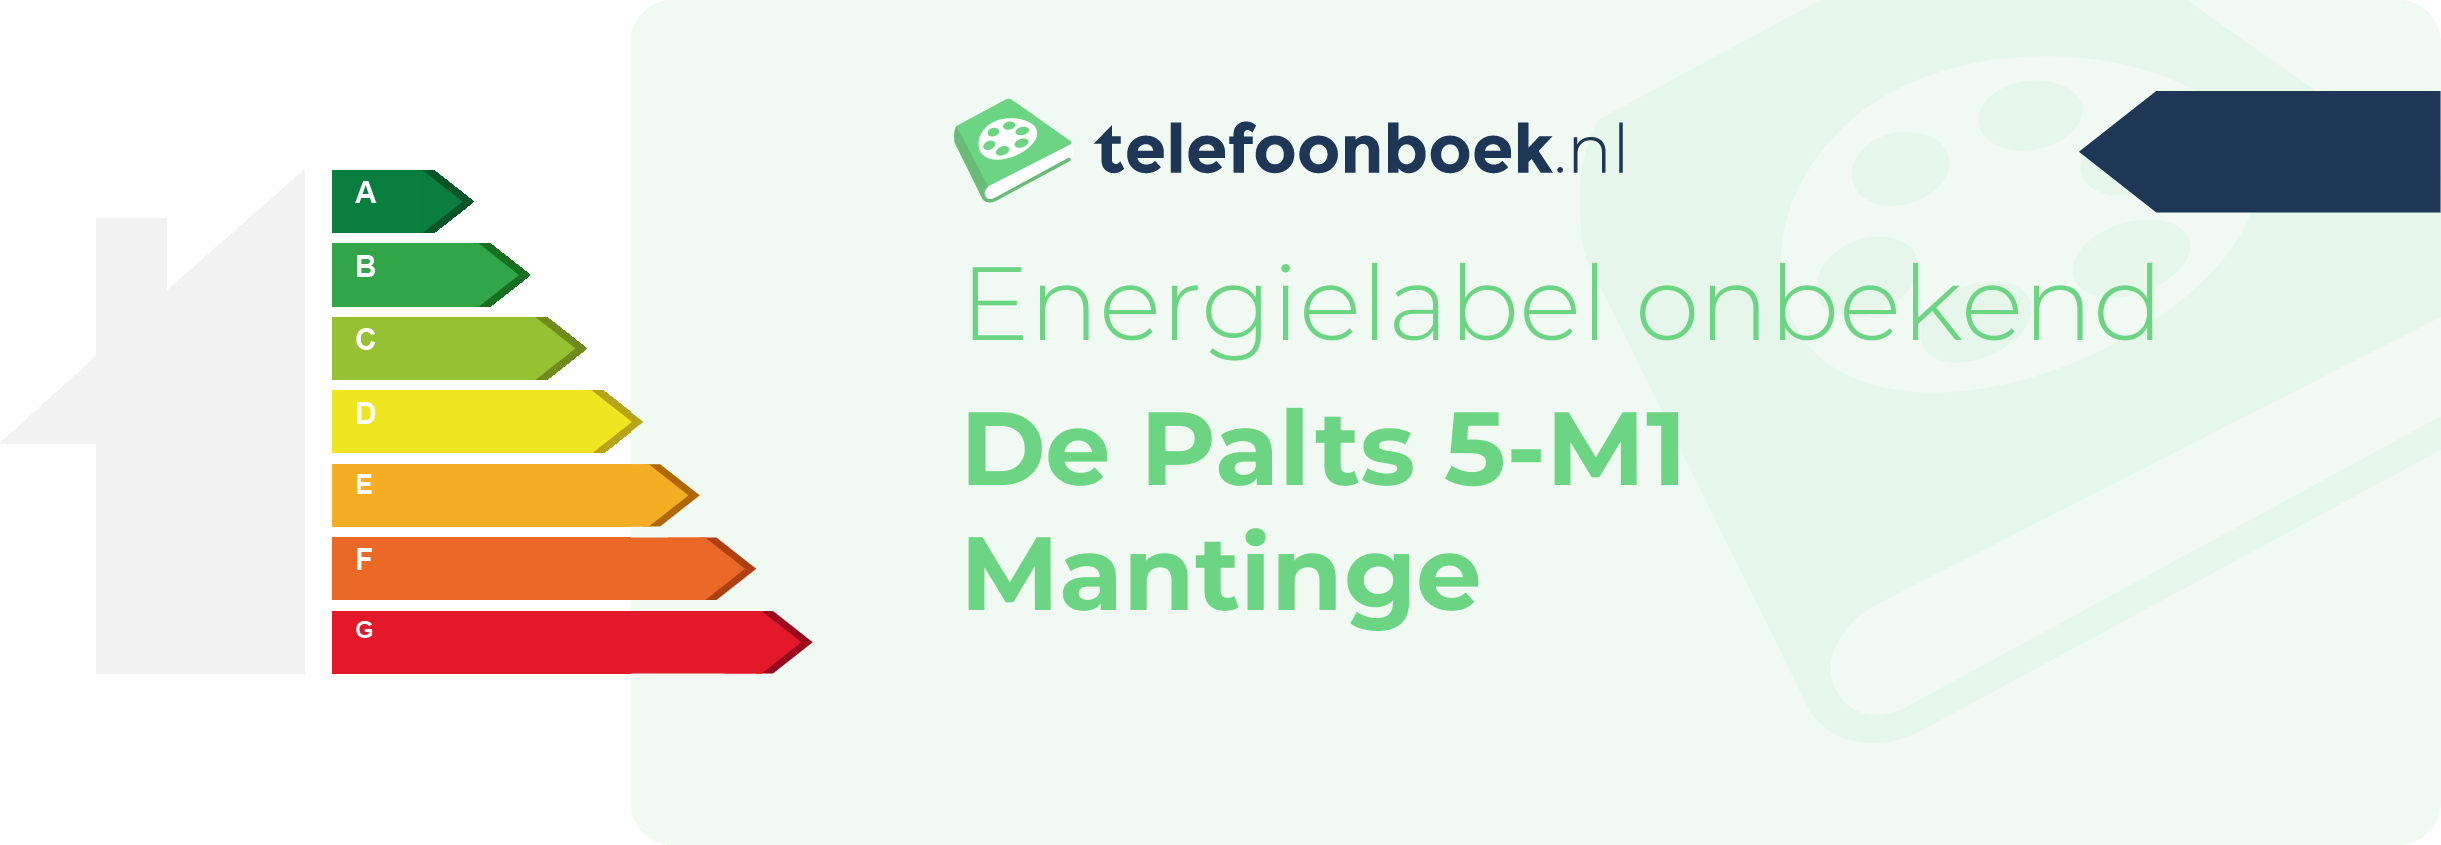 Energielabel De Palts 5-M1 Mantinge